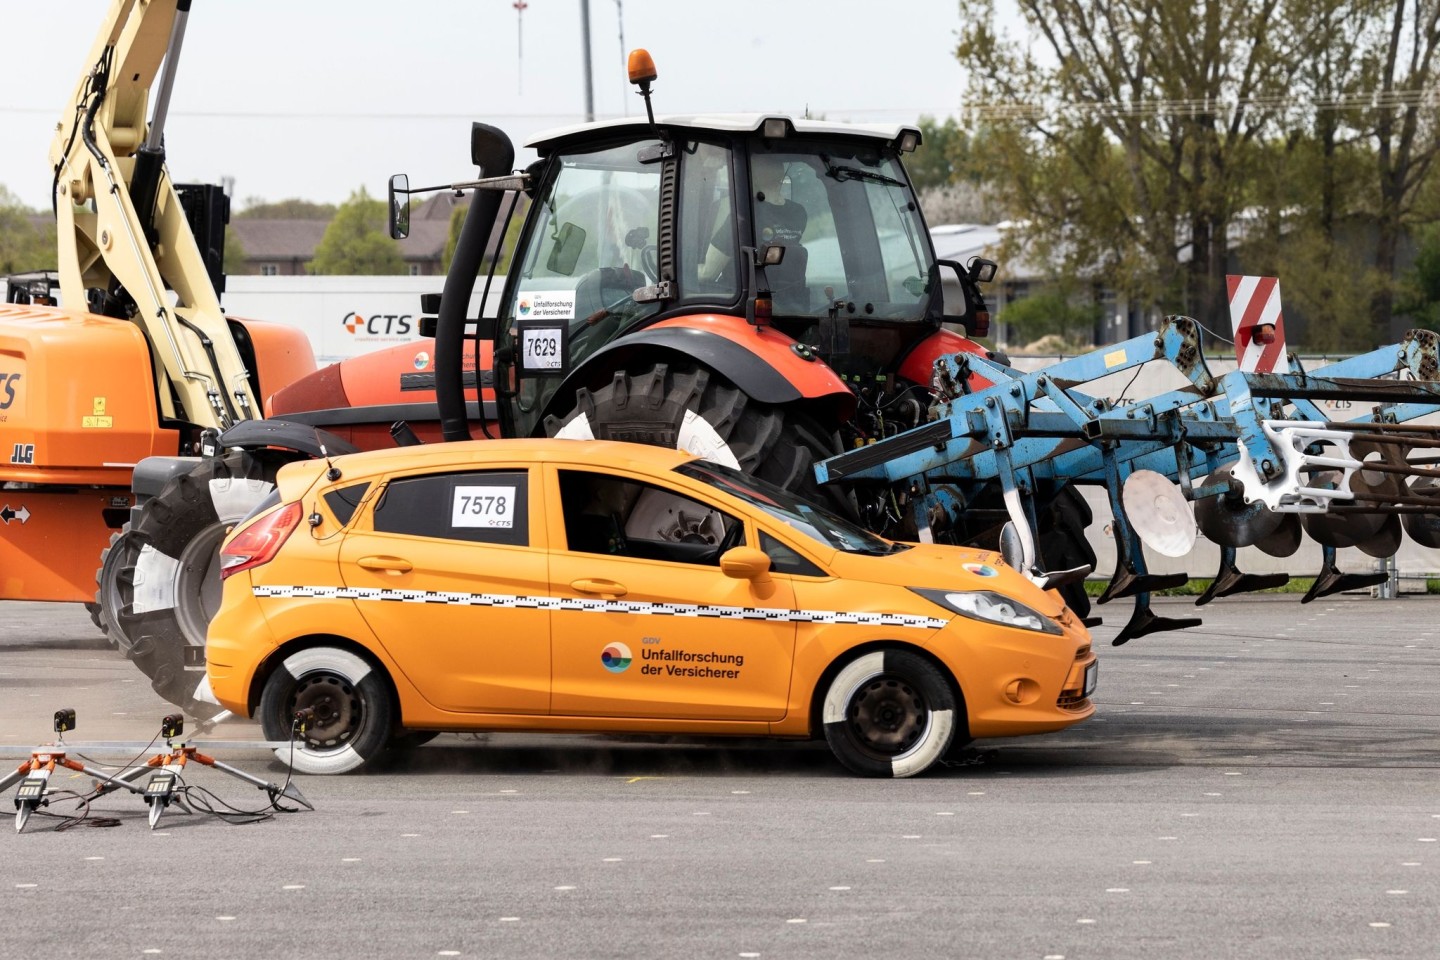 Der PKW schlägt beim Crashtest zu Forschungsprojekt Unfallgefahr mit Traktoren und Landmaschinen in den Traktor und das daran befindliche landwirtschaftliche Gerät ein.